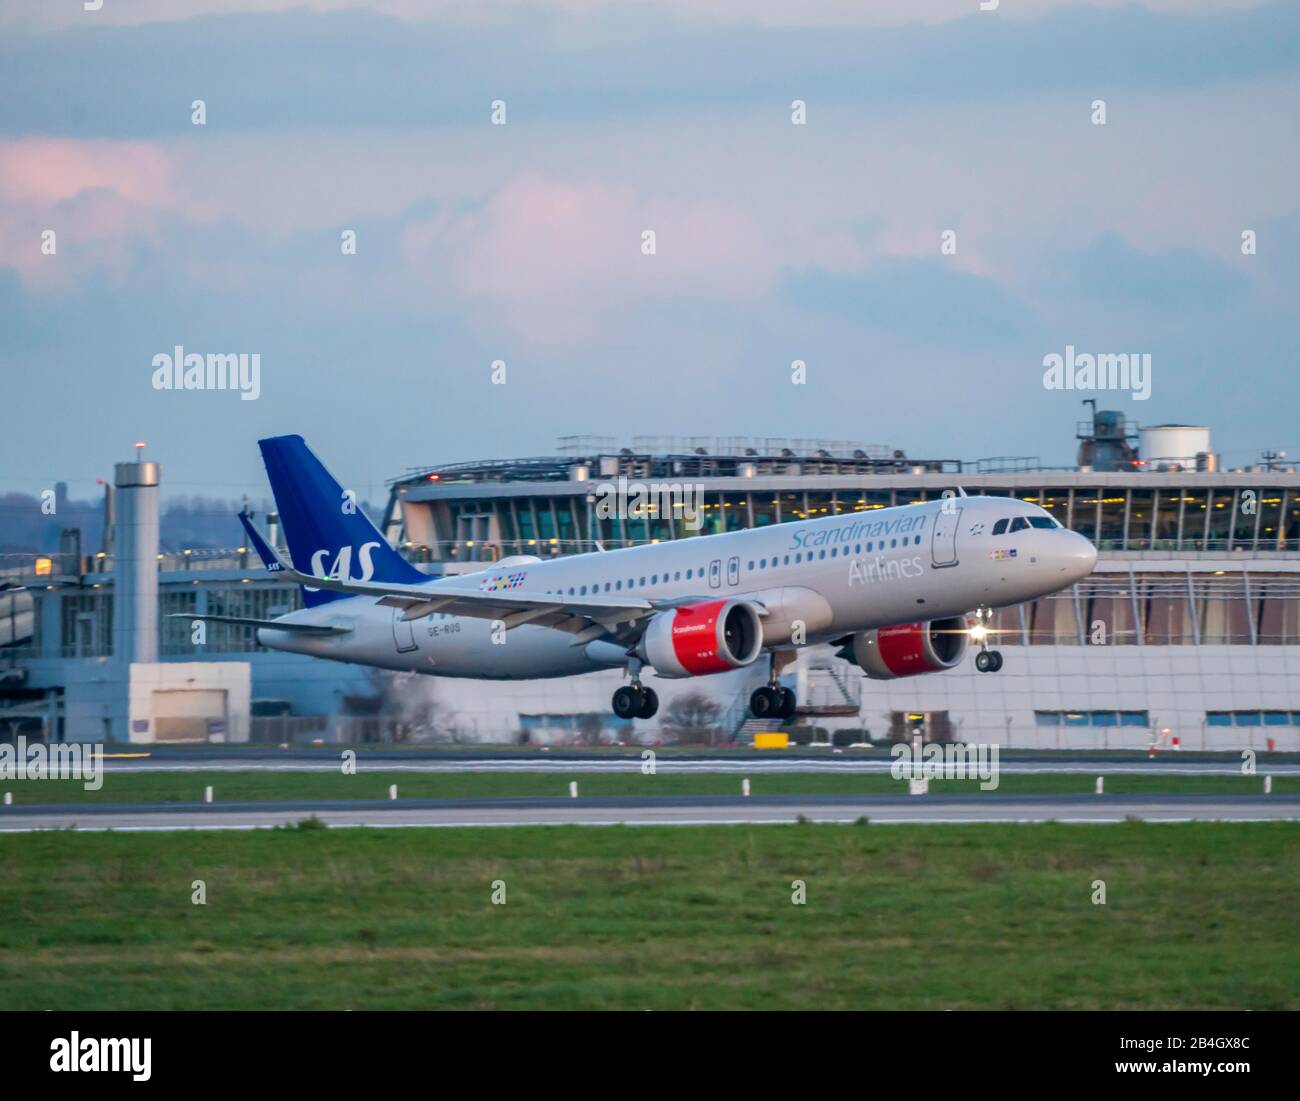 Aeropuerto Internacional de DŸsseldorf, DUS, avión en aterrizaje, SAS, Airbus A320 Foto de stock